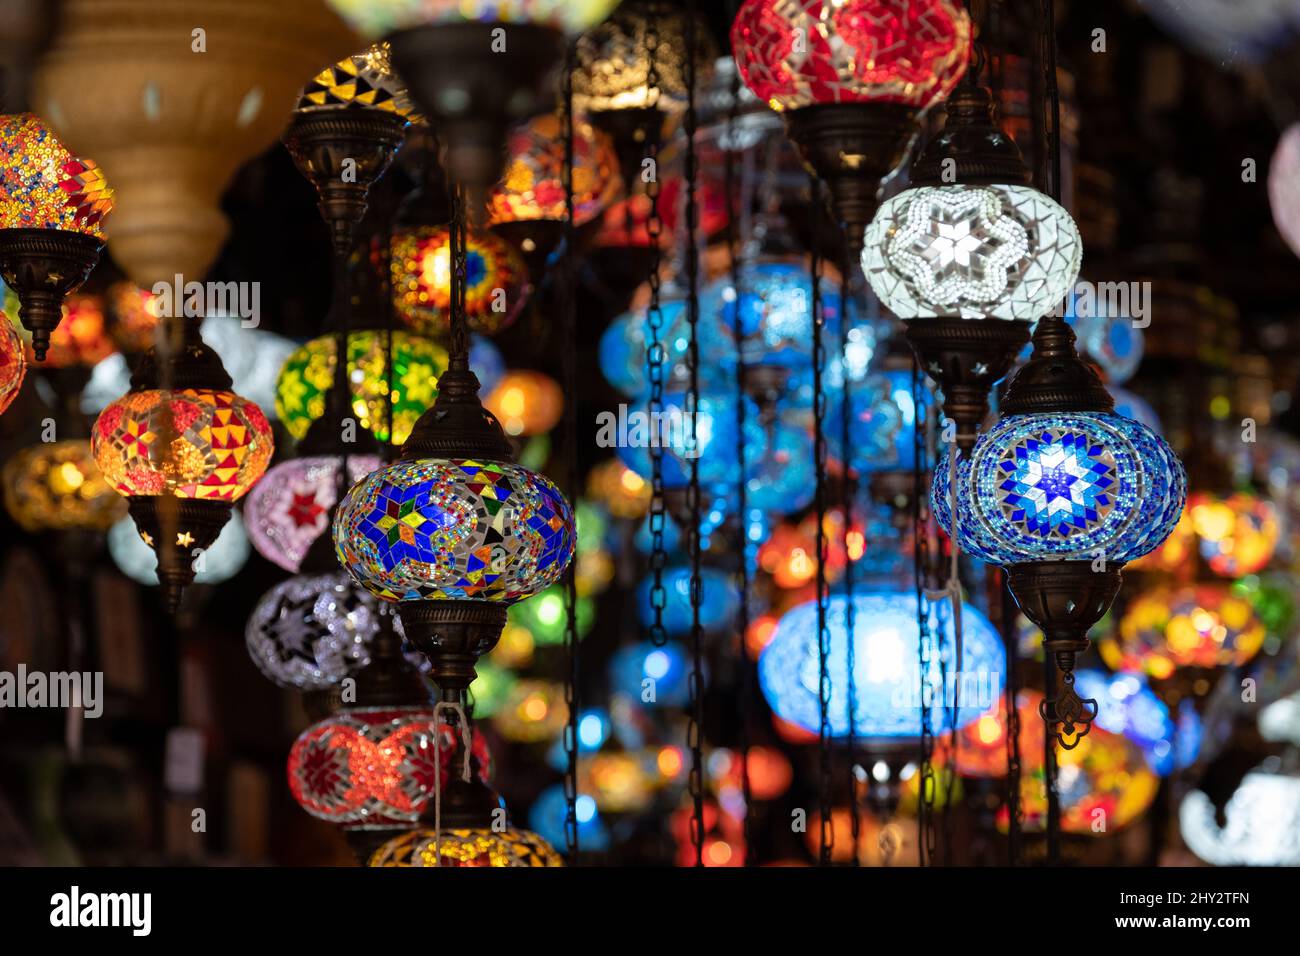 Inneneinrichtung des Leuchtenshops in Camden Market im Norden Londons, Großbritannien, mit bunten Glashängelampen im orientalischen Stil. Stockfoto